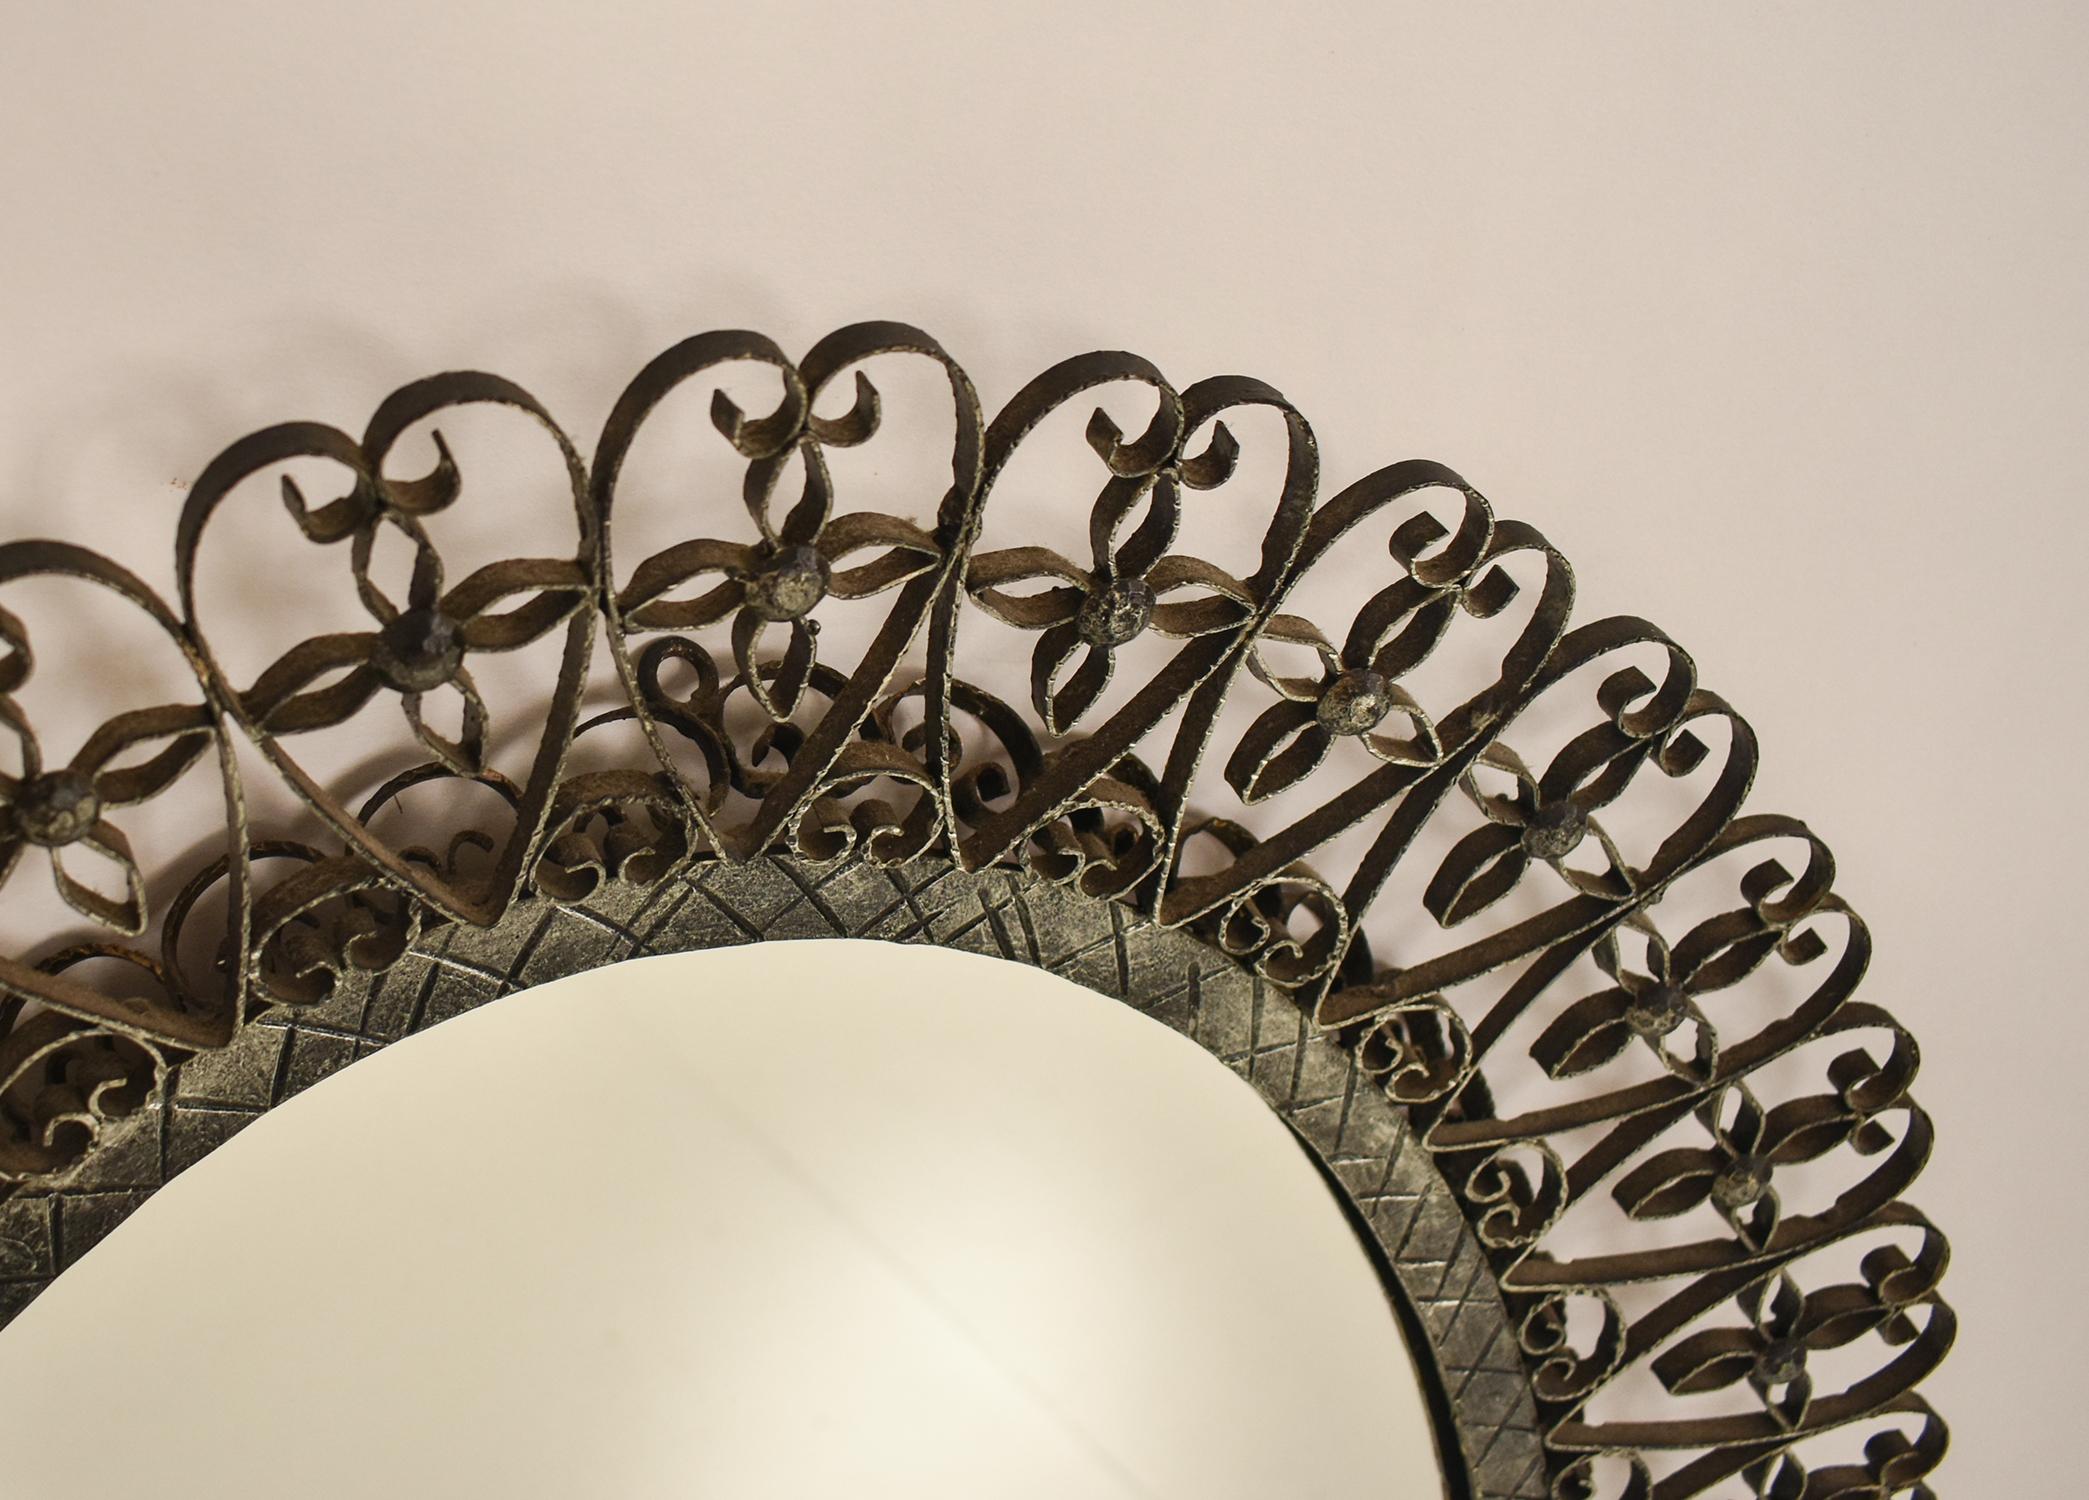 Ovaler Spiegel, geschmiedetes Eisen. Spanien 1970er Jahre
Patiniert in gealterter Silberfarbe. Schöne Patina.
Erfolgreiche Ergänzung in einem klassischen oder zeitgenössischen Umfeld.
Gesamtmaße: Höhe 78cm, Breite 61cm. Tiefe 5cm.
Maße des Spiegels: